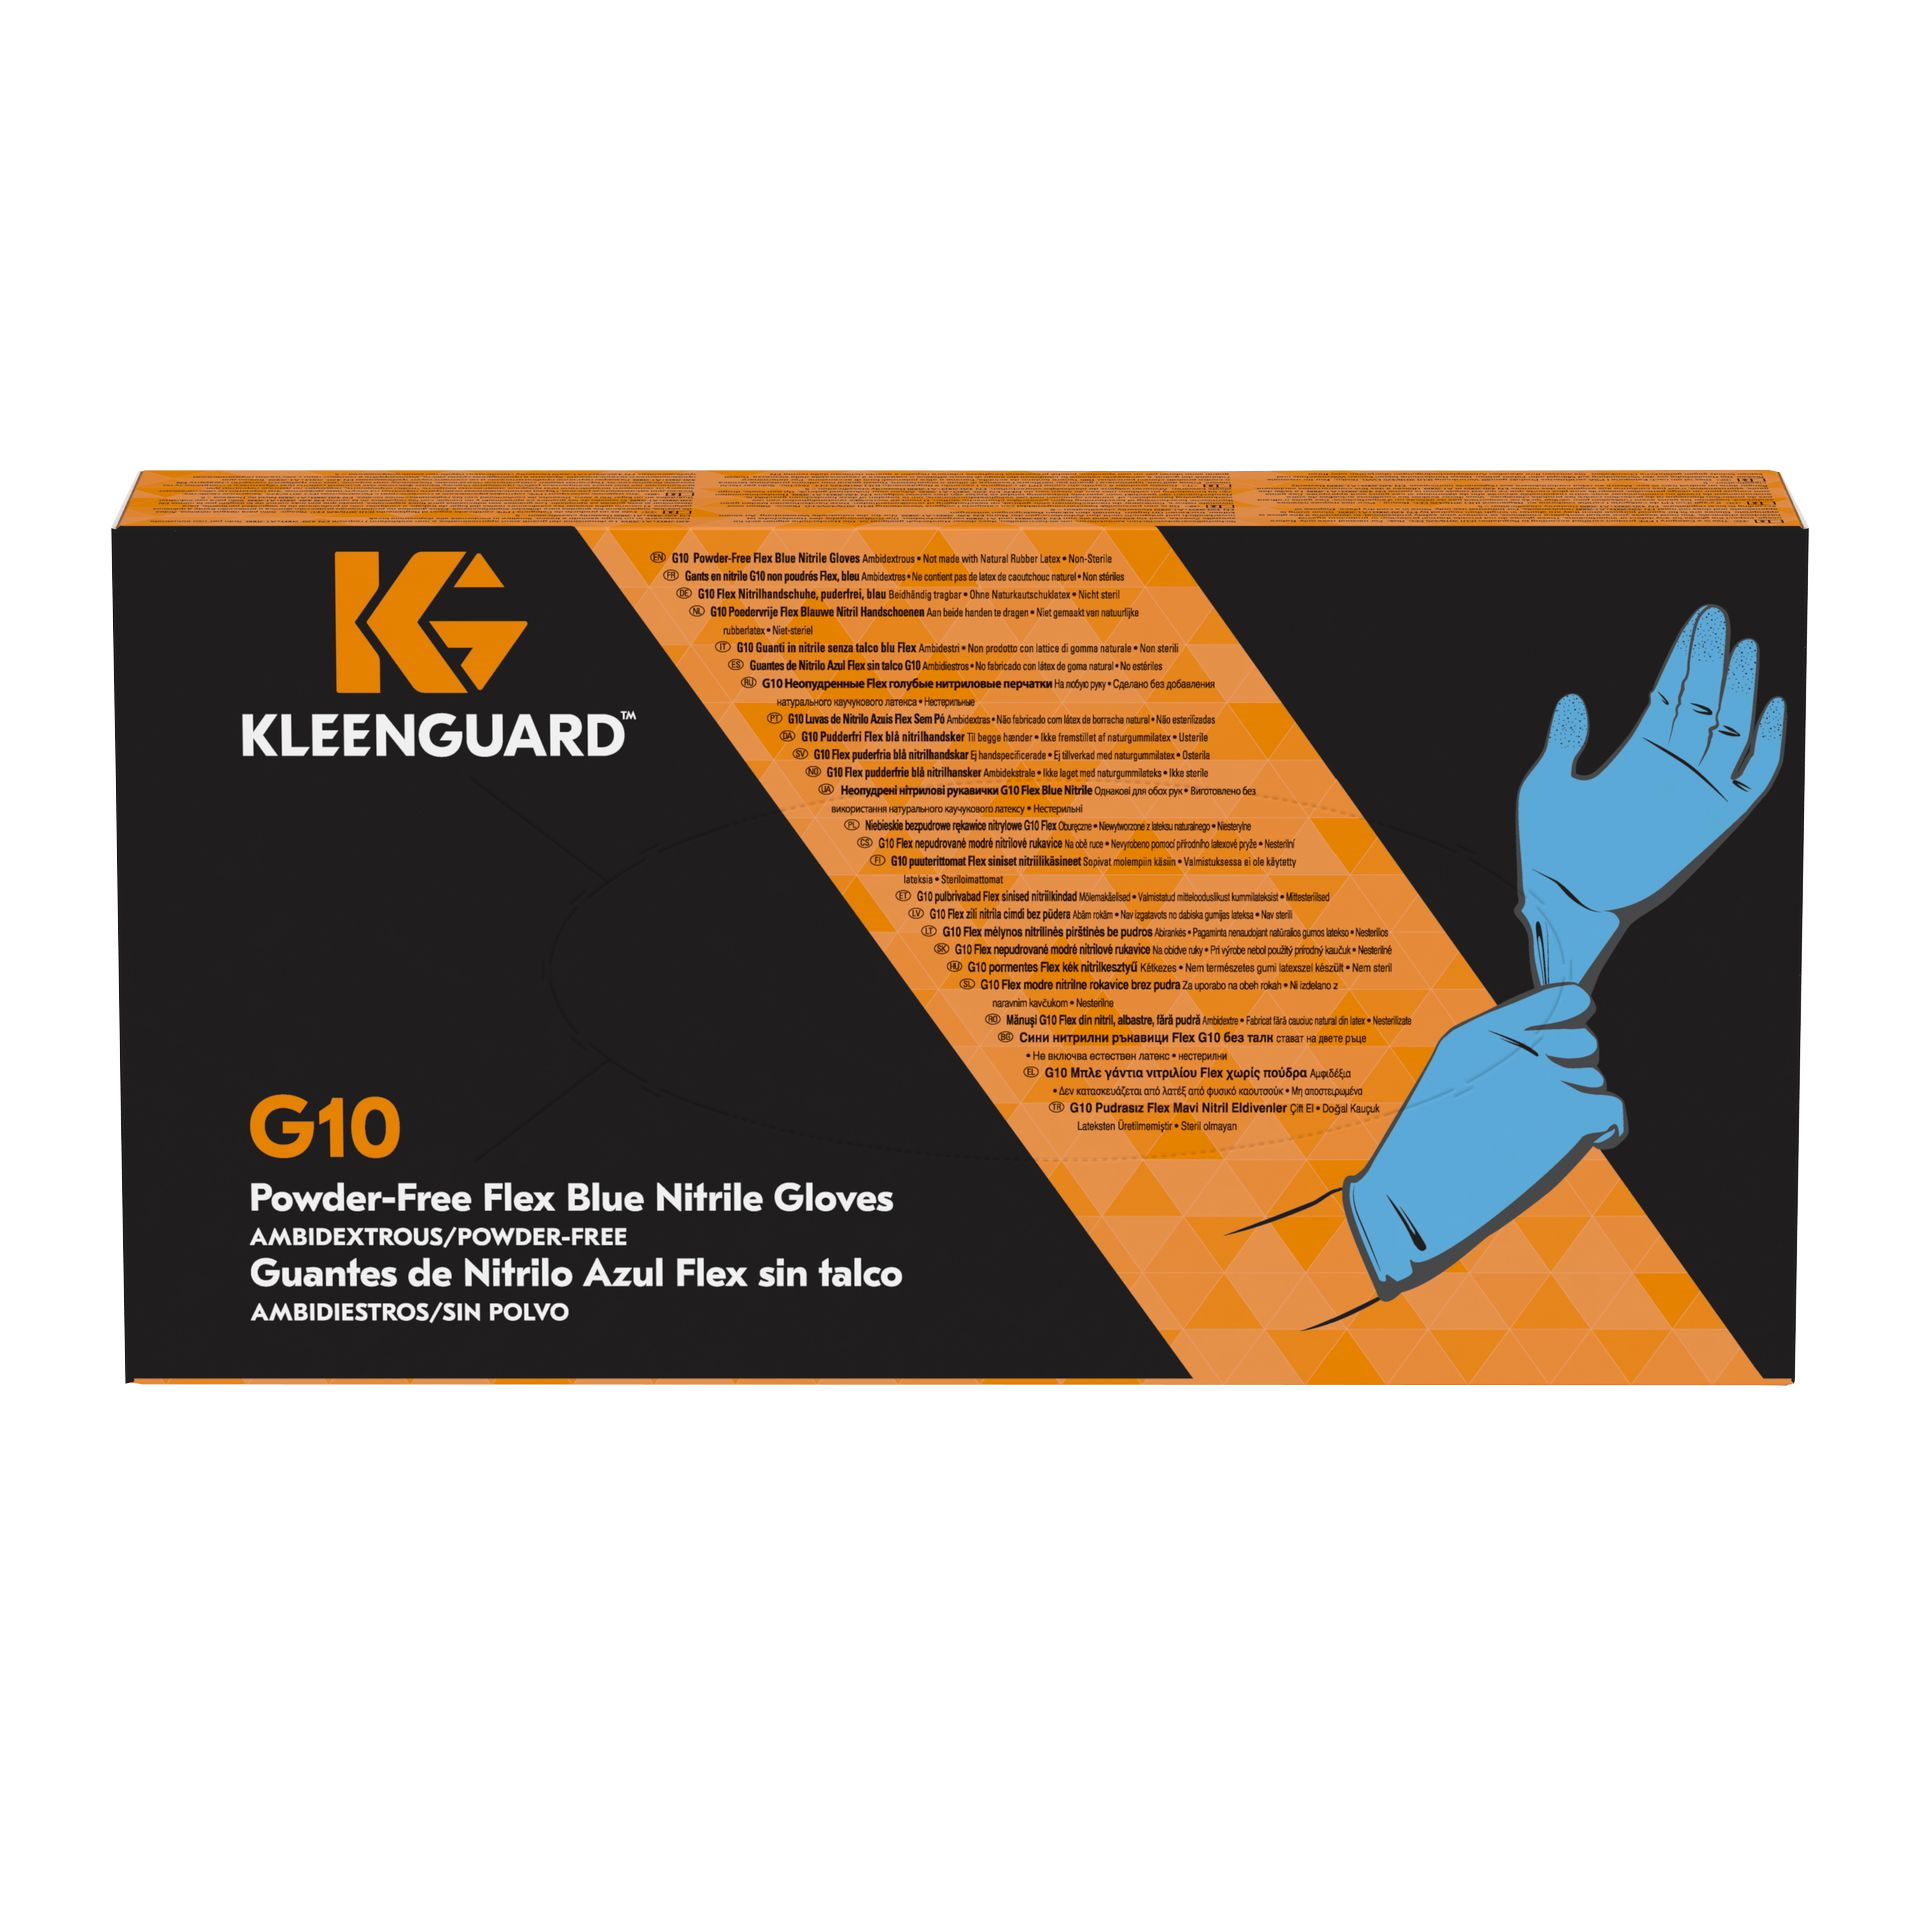 KleenGuard® Guante desechable  G10 2Pro, 30241475, Guantes de Protección, Talla L,  10 cajas x 100 guantes (1000 en total) - S060714061